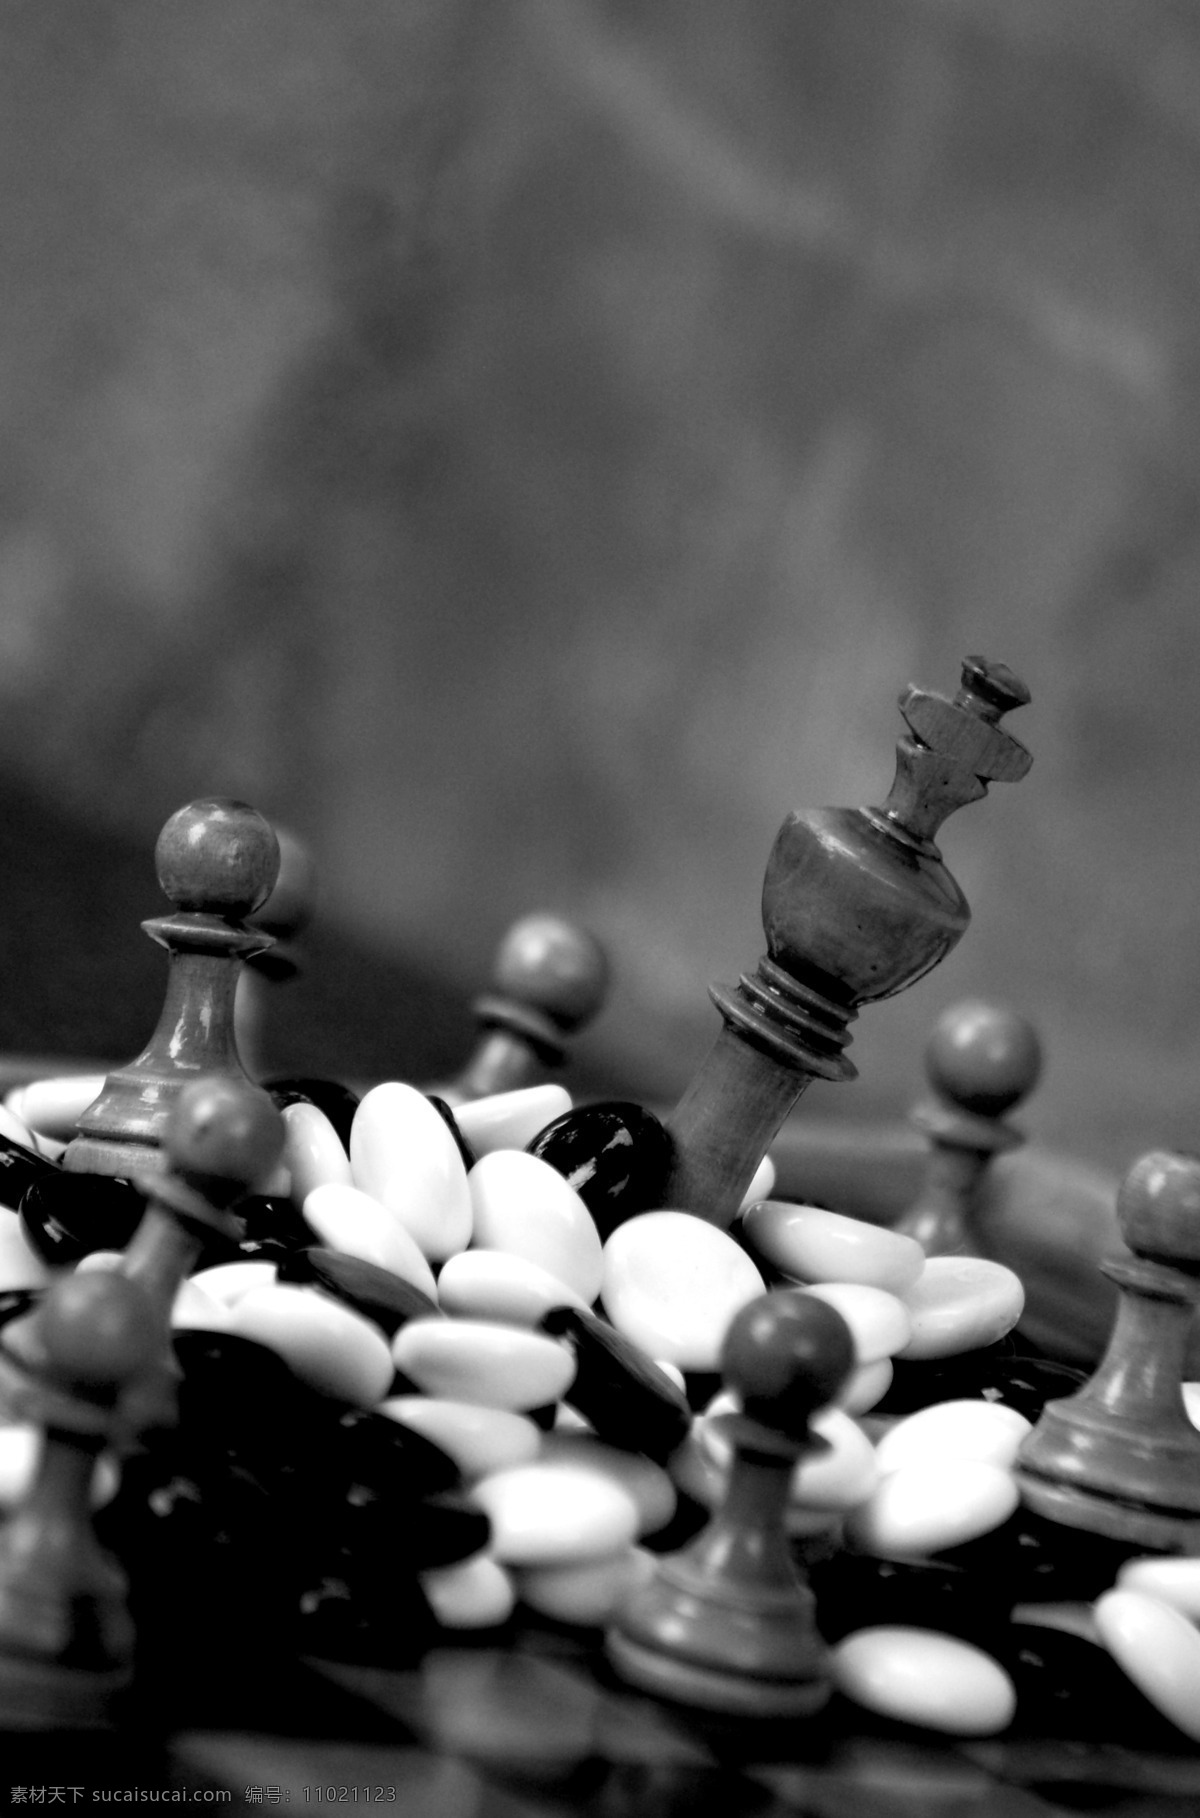 国际象棋 棋类游戏 棋子 棋牌 游戏 娱乐 益智游戏 象棋 象棋素材 娱乐休闲 生活百科